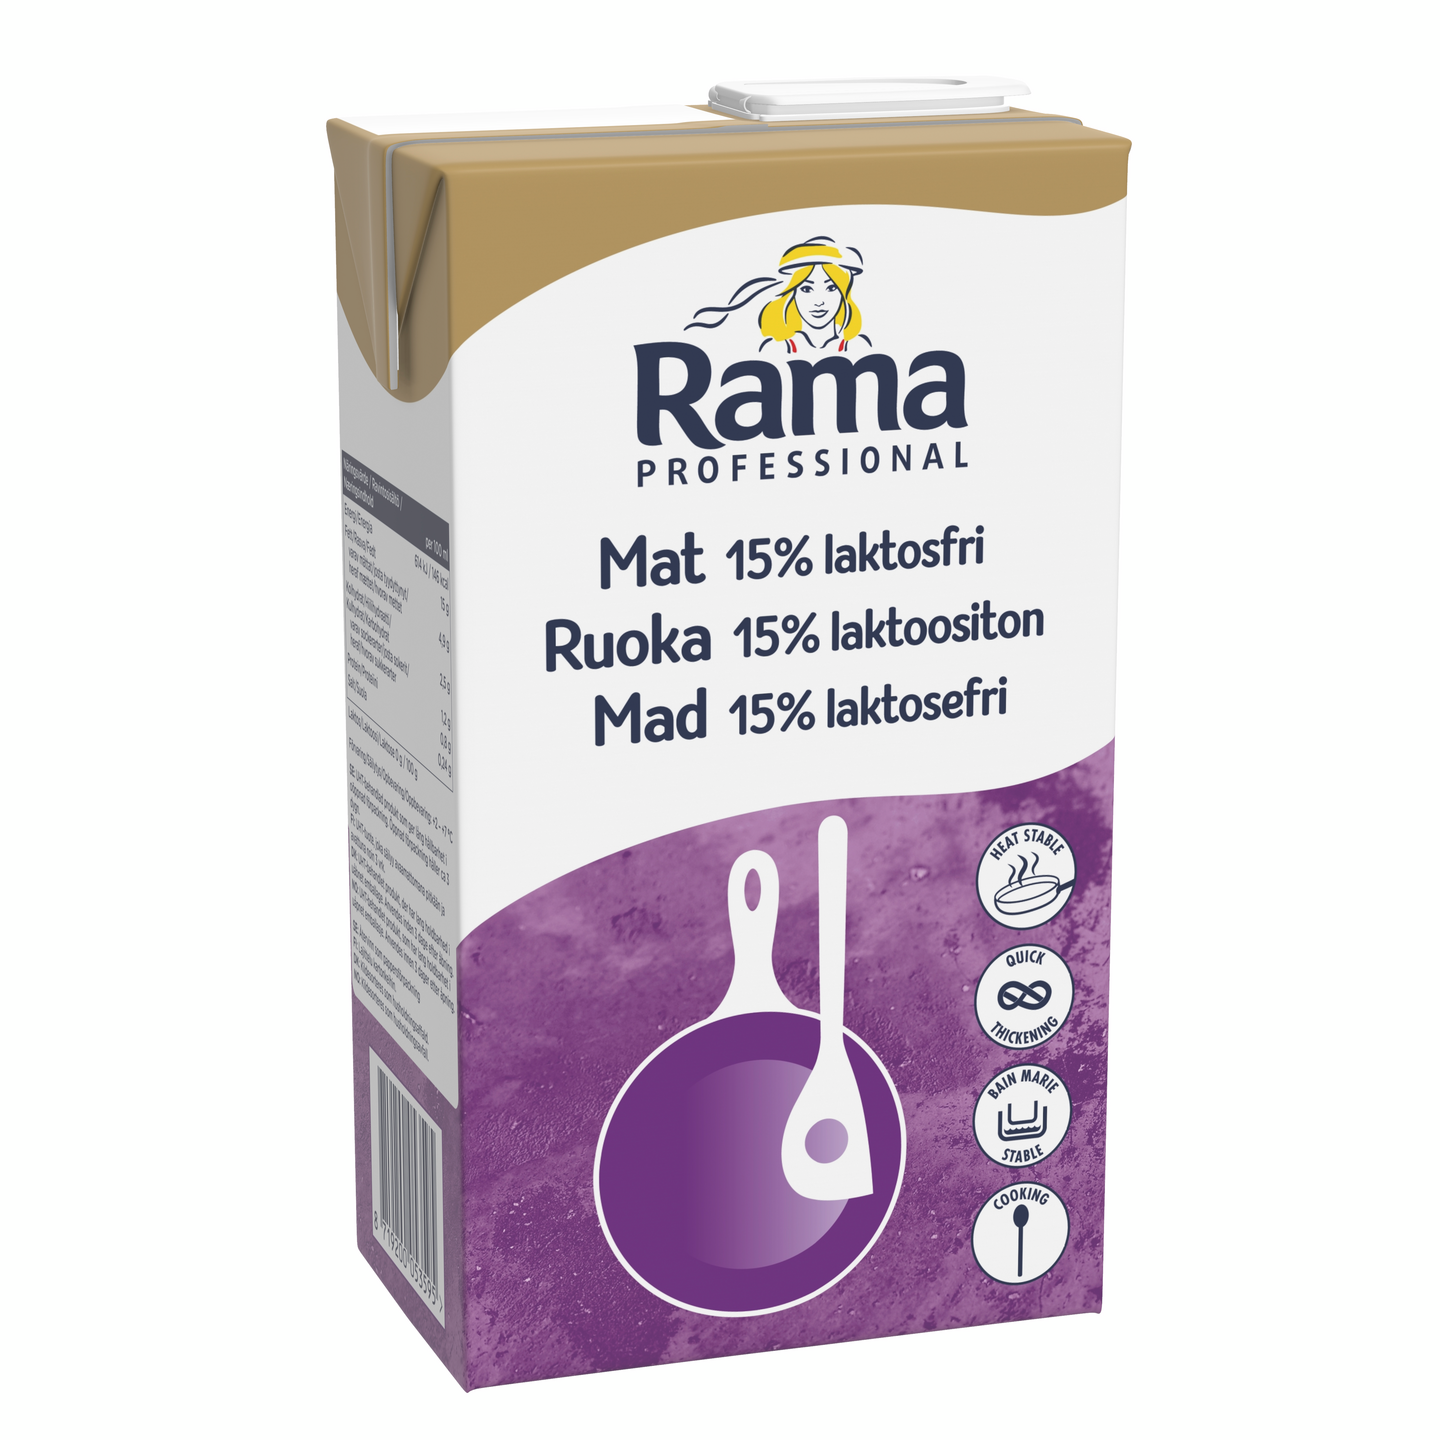 Rama Professional Ruoka Laktoositon maitopohjainen kasvirasvasekoite 15% 1l